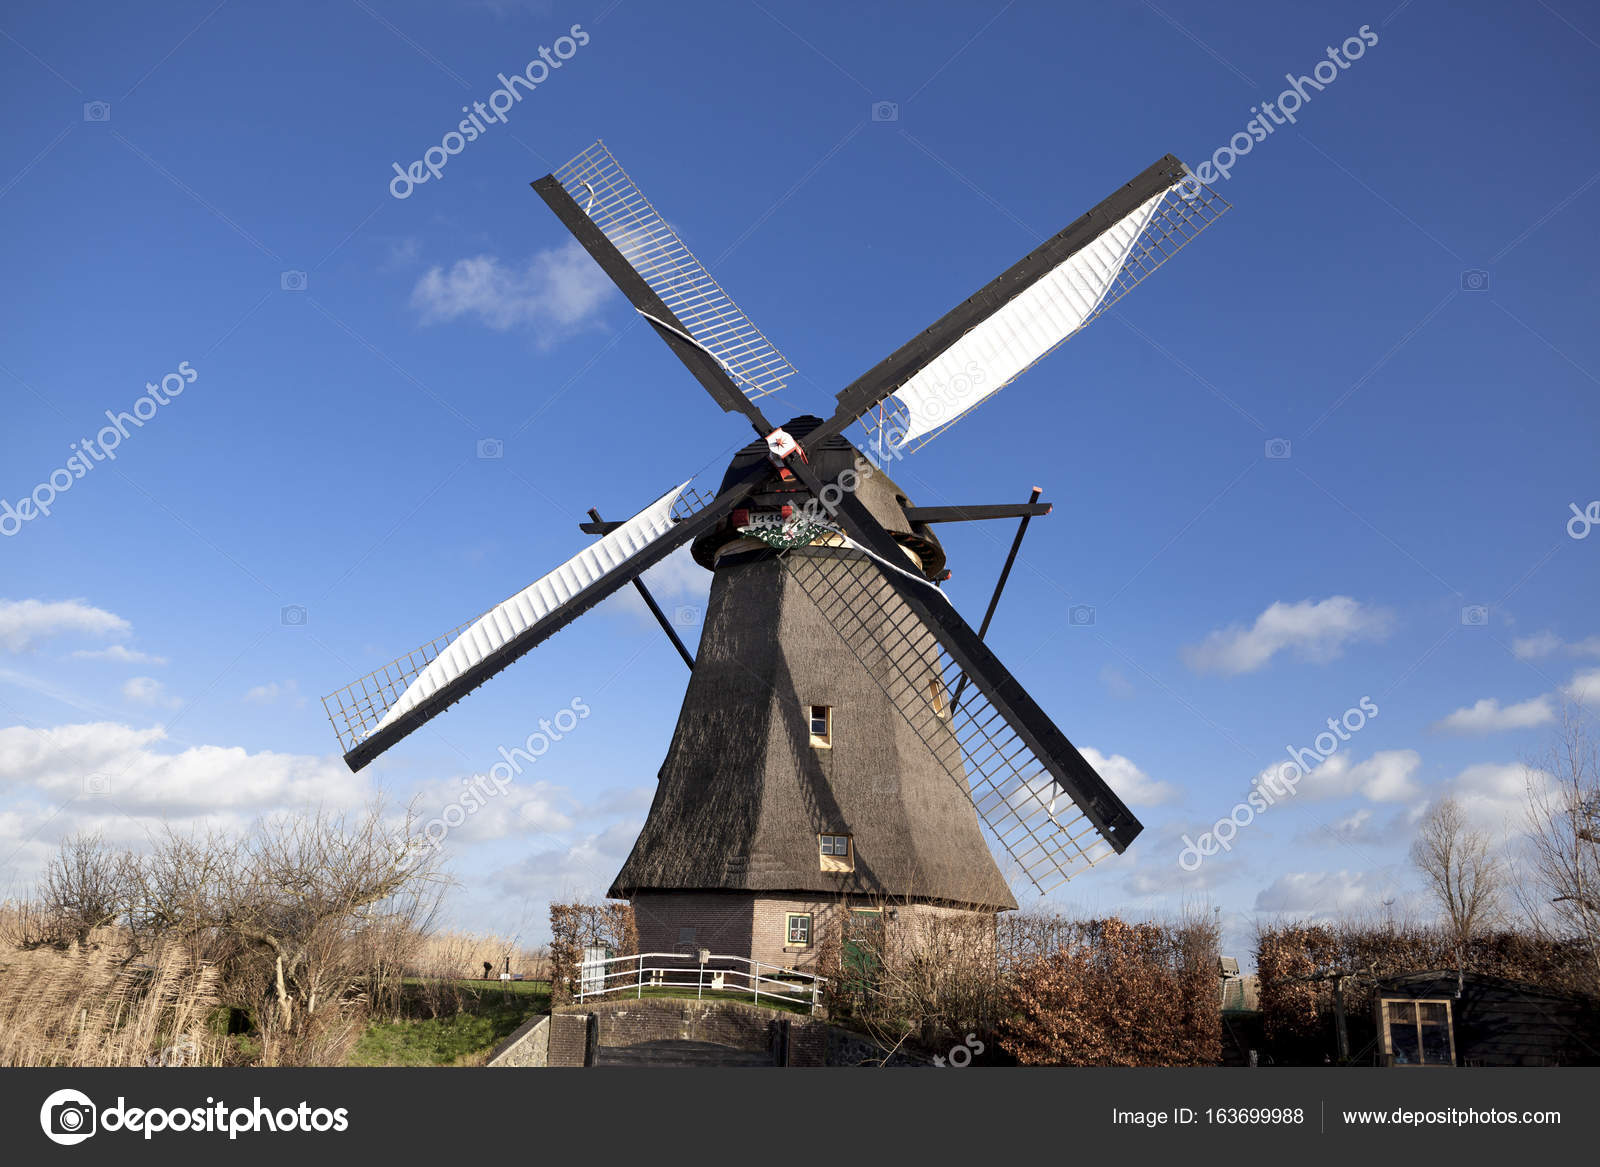 Resultado de imagem para moinho de vento  Windmill images, Windmill, Old  windmills